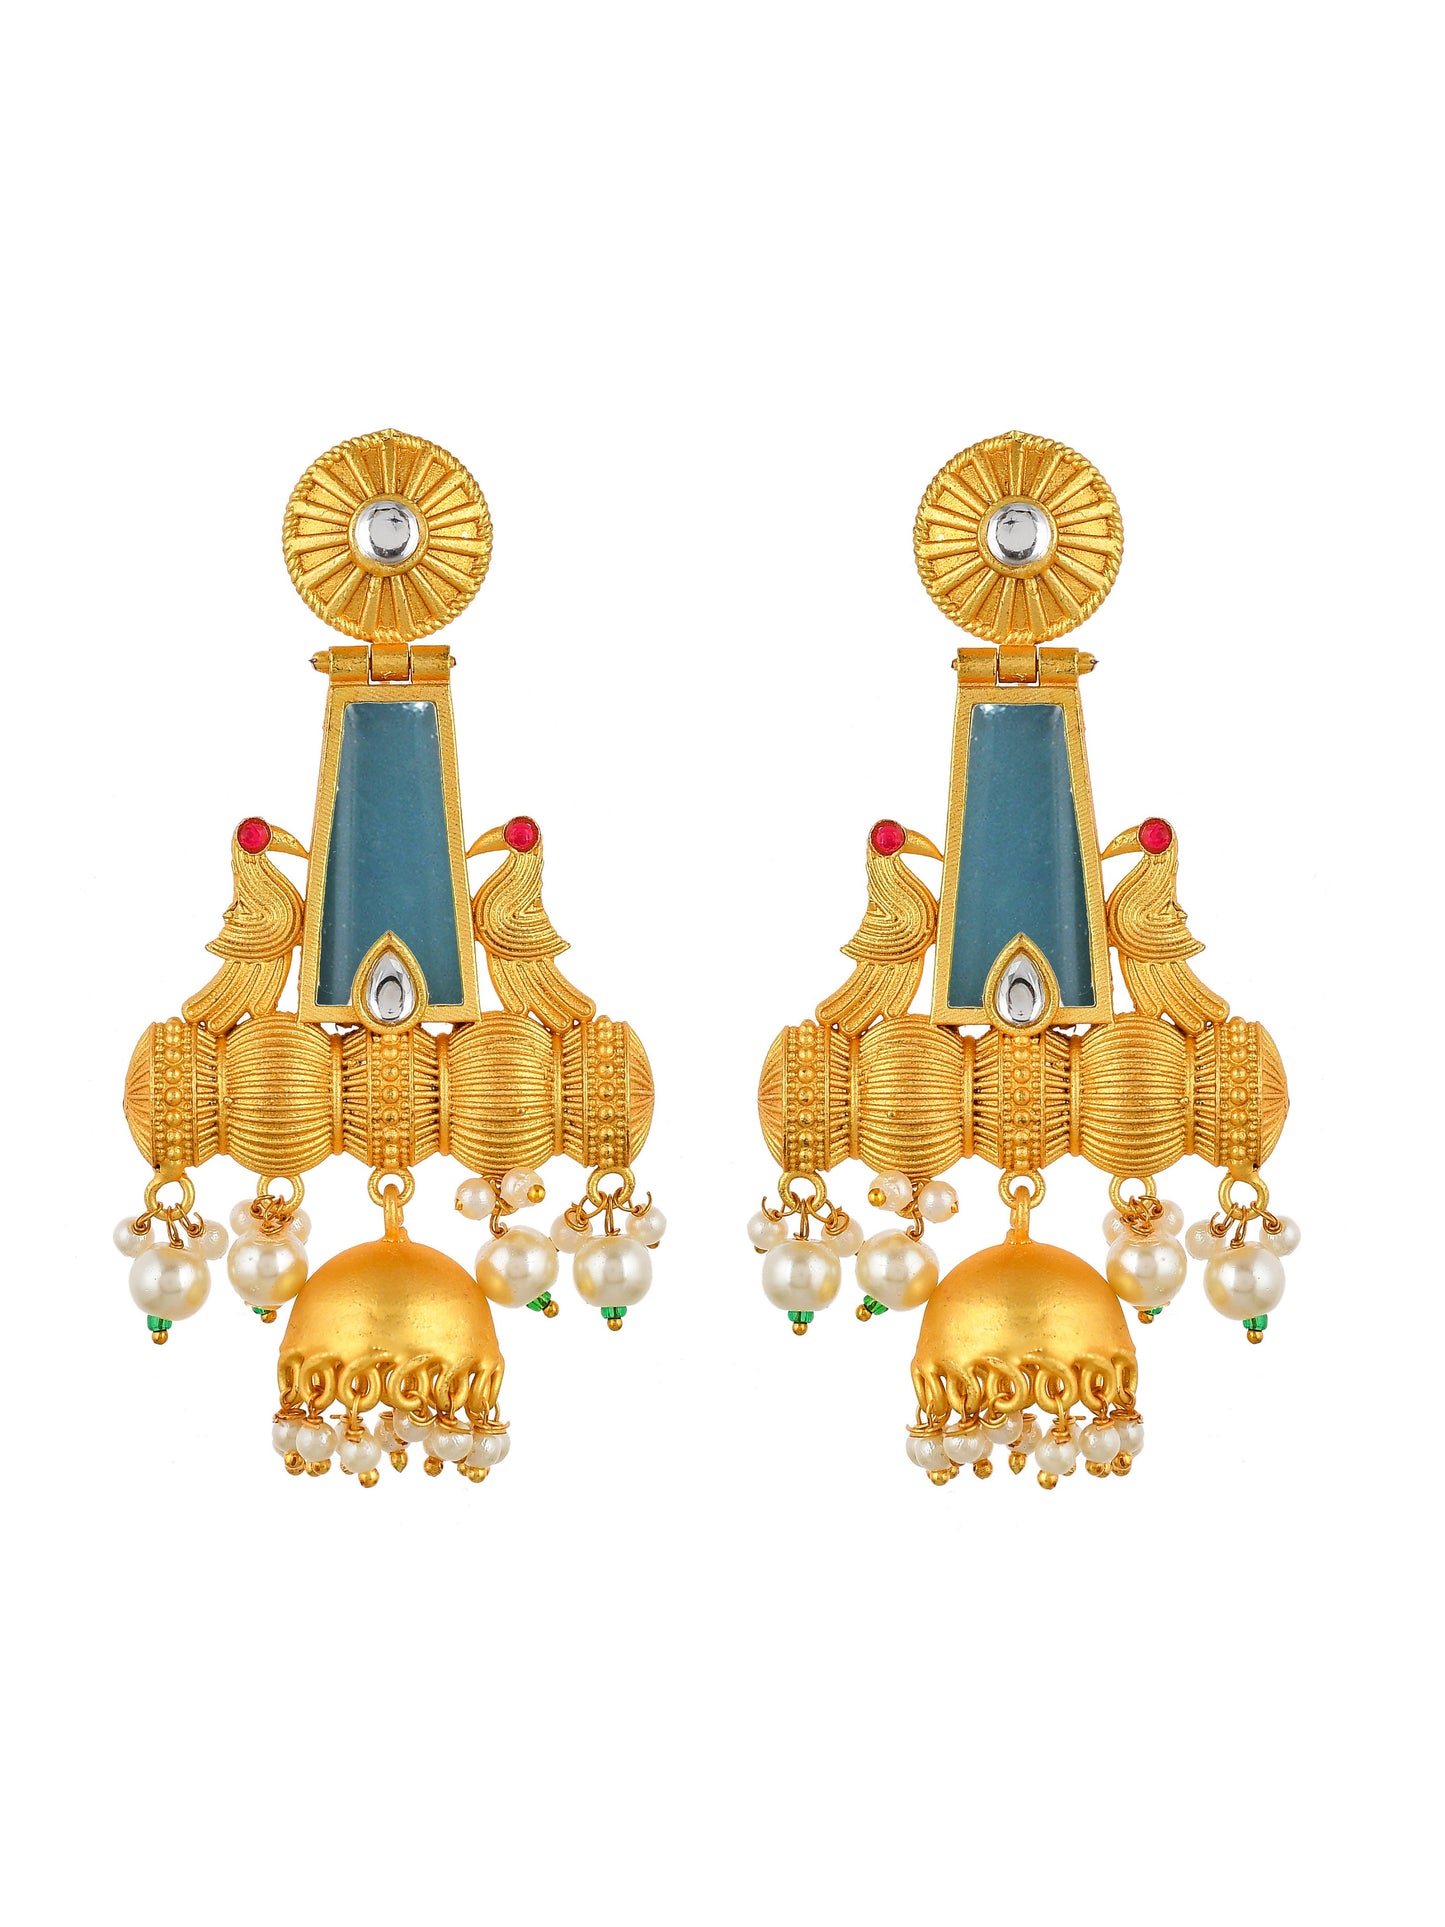 Ethnic Chandbali jhumka earrings